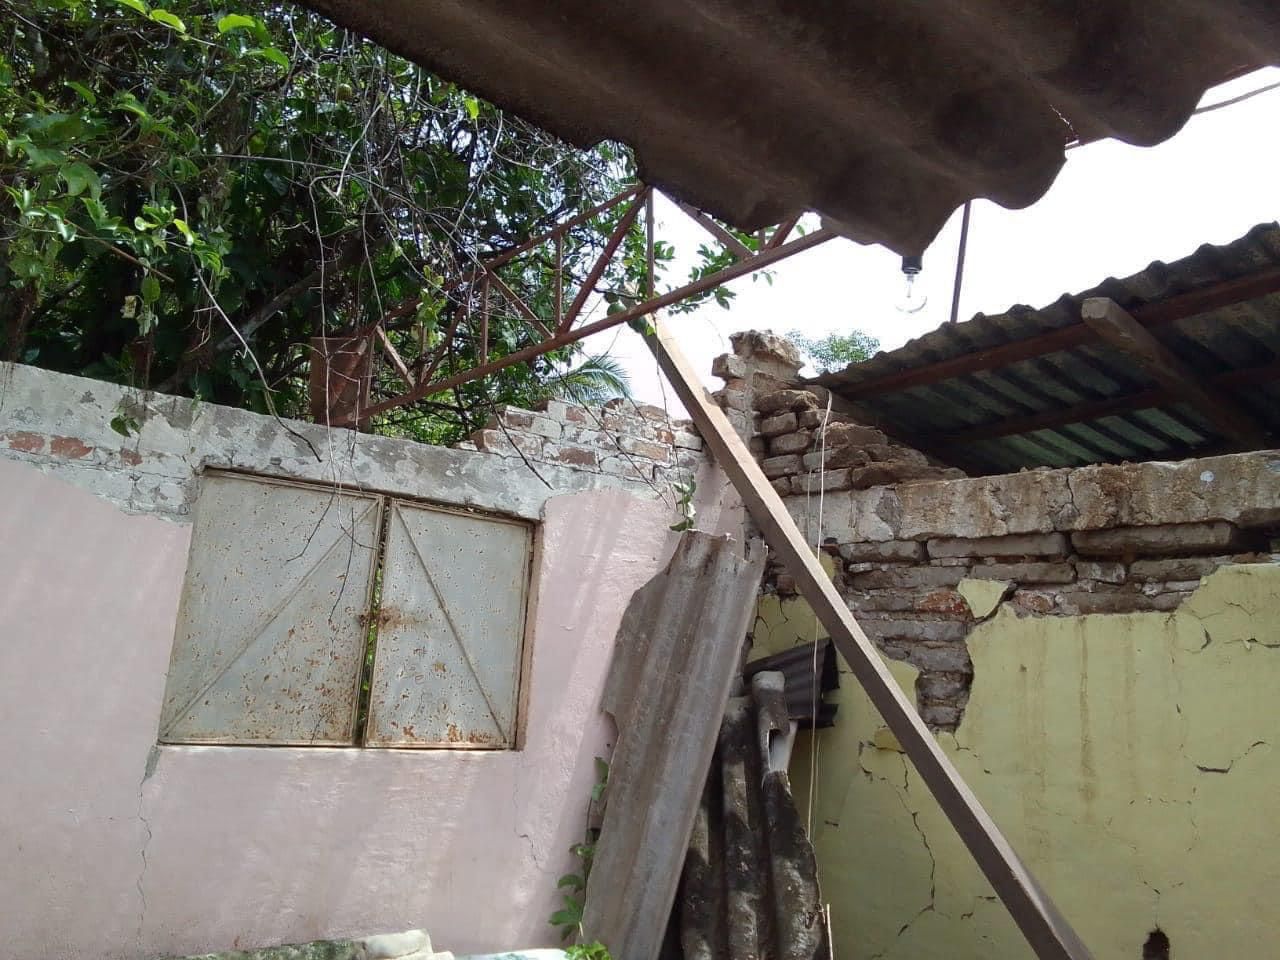 Instalan centros de acopio para familias que perdieron sus hogares tras el sismo